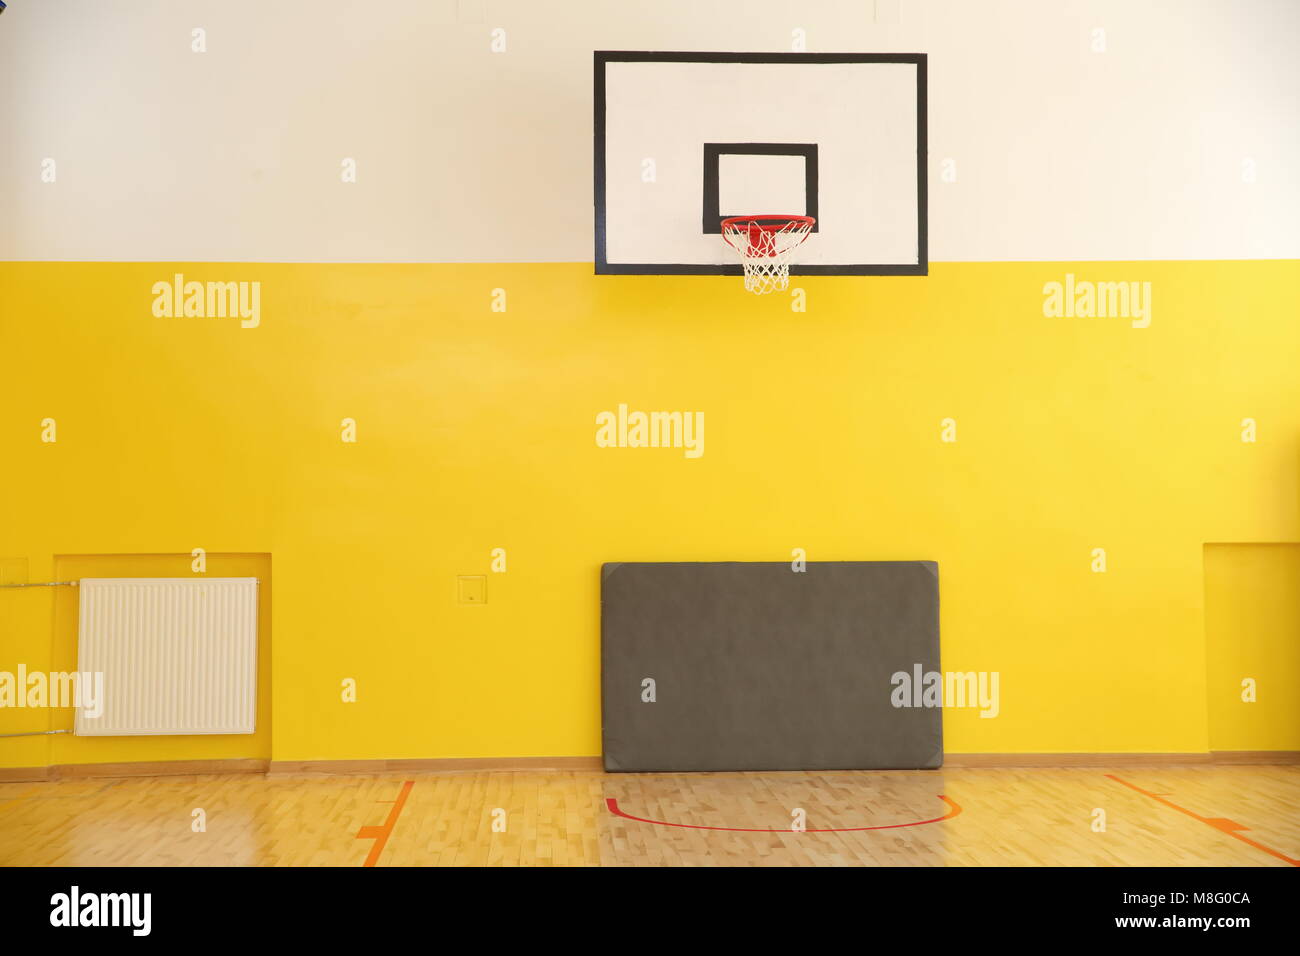 Basketball Boards sind standardisierte als auch ihre Höhe, auf der sie platziert sind, so dass die Spieler unter den gleichen Bedingungen ausüben. Stockfoto